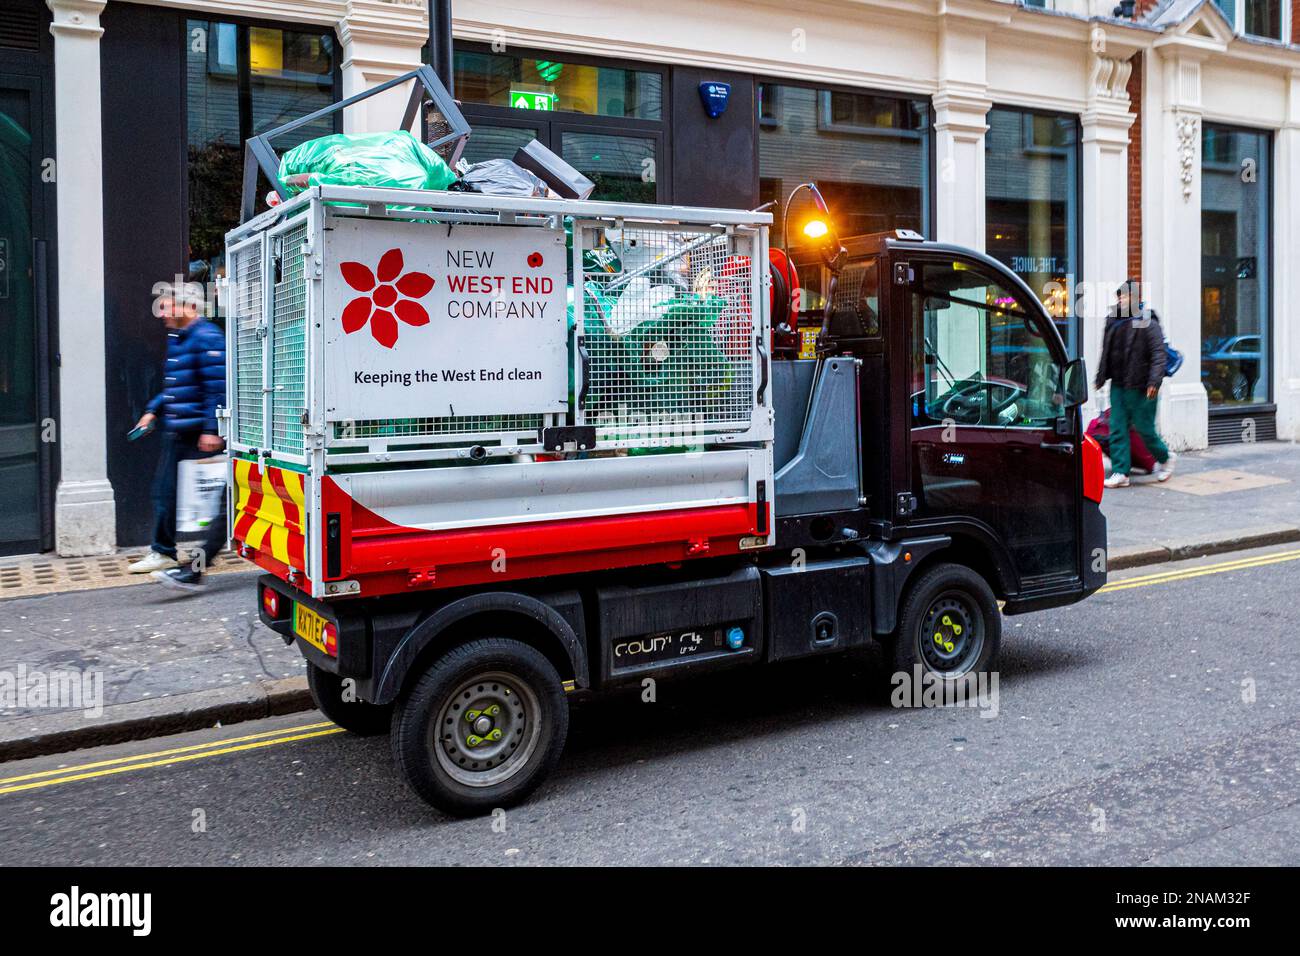 Elektrischer Müllabfuhrwagen London – Elektrischer Müllabfuhrwagen, der von der New West End Company betrieben wird Stockfoto